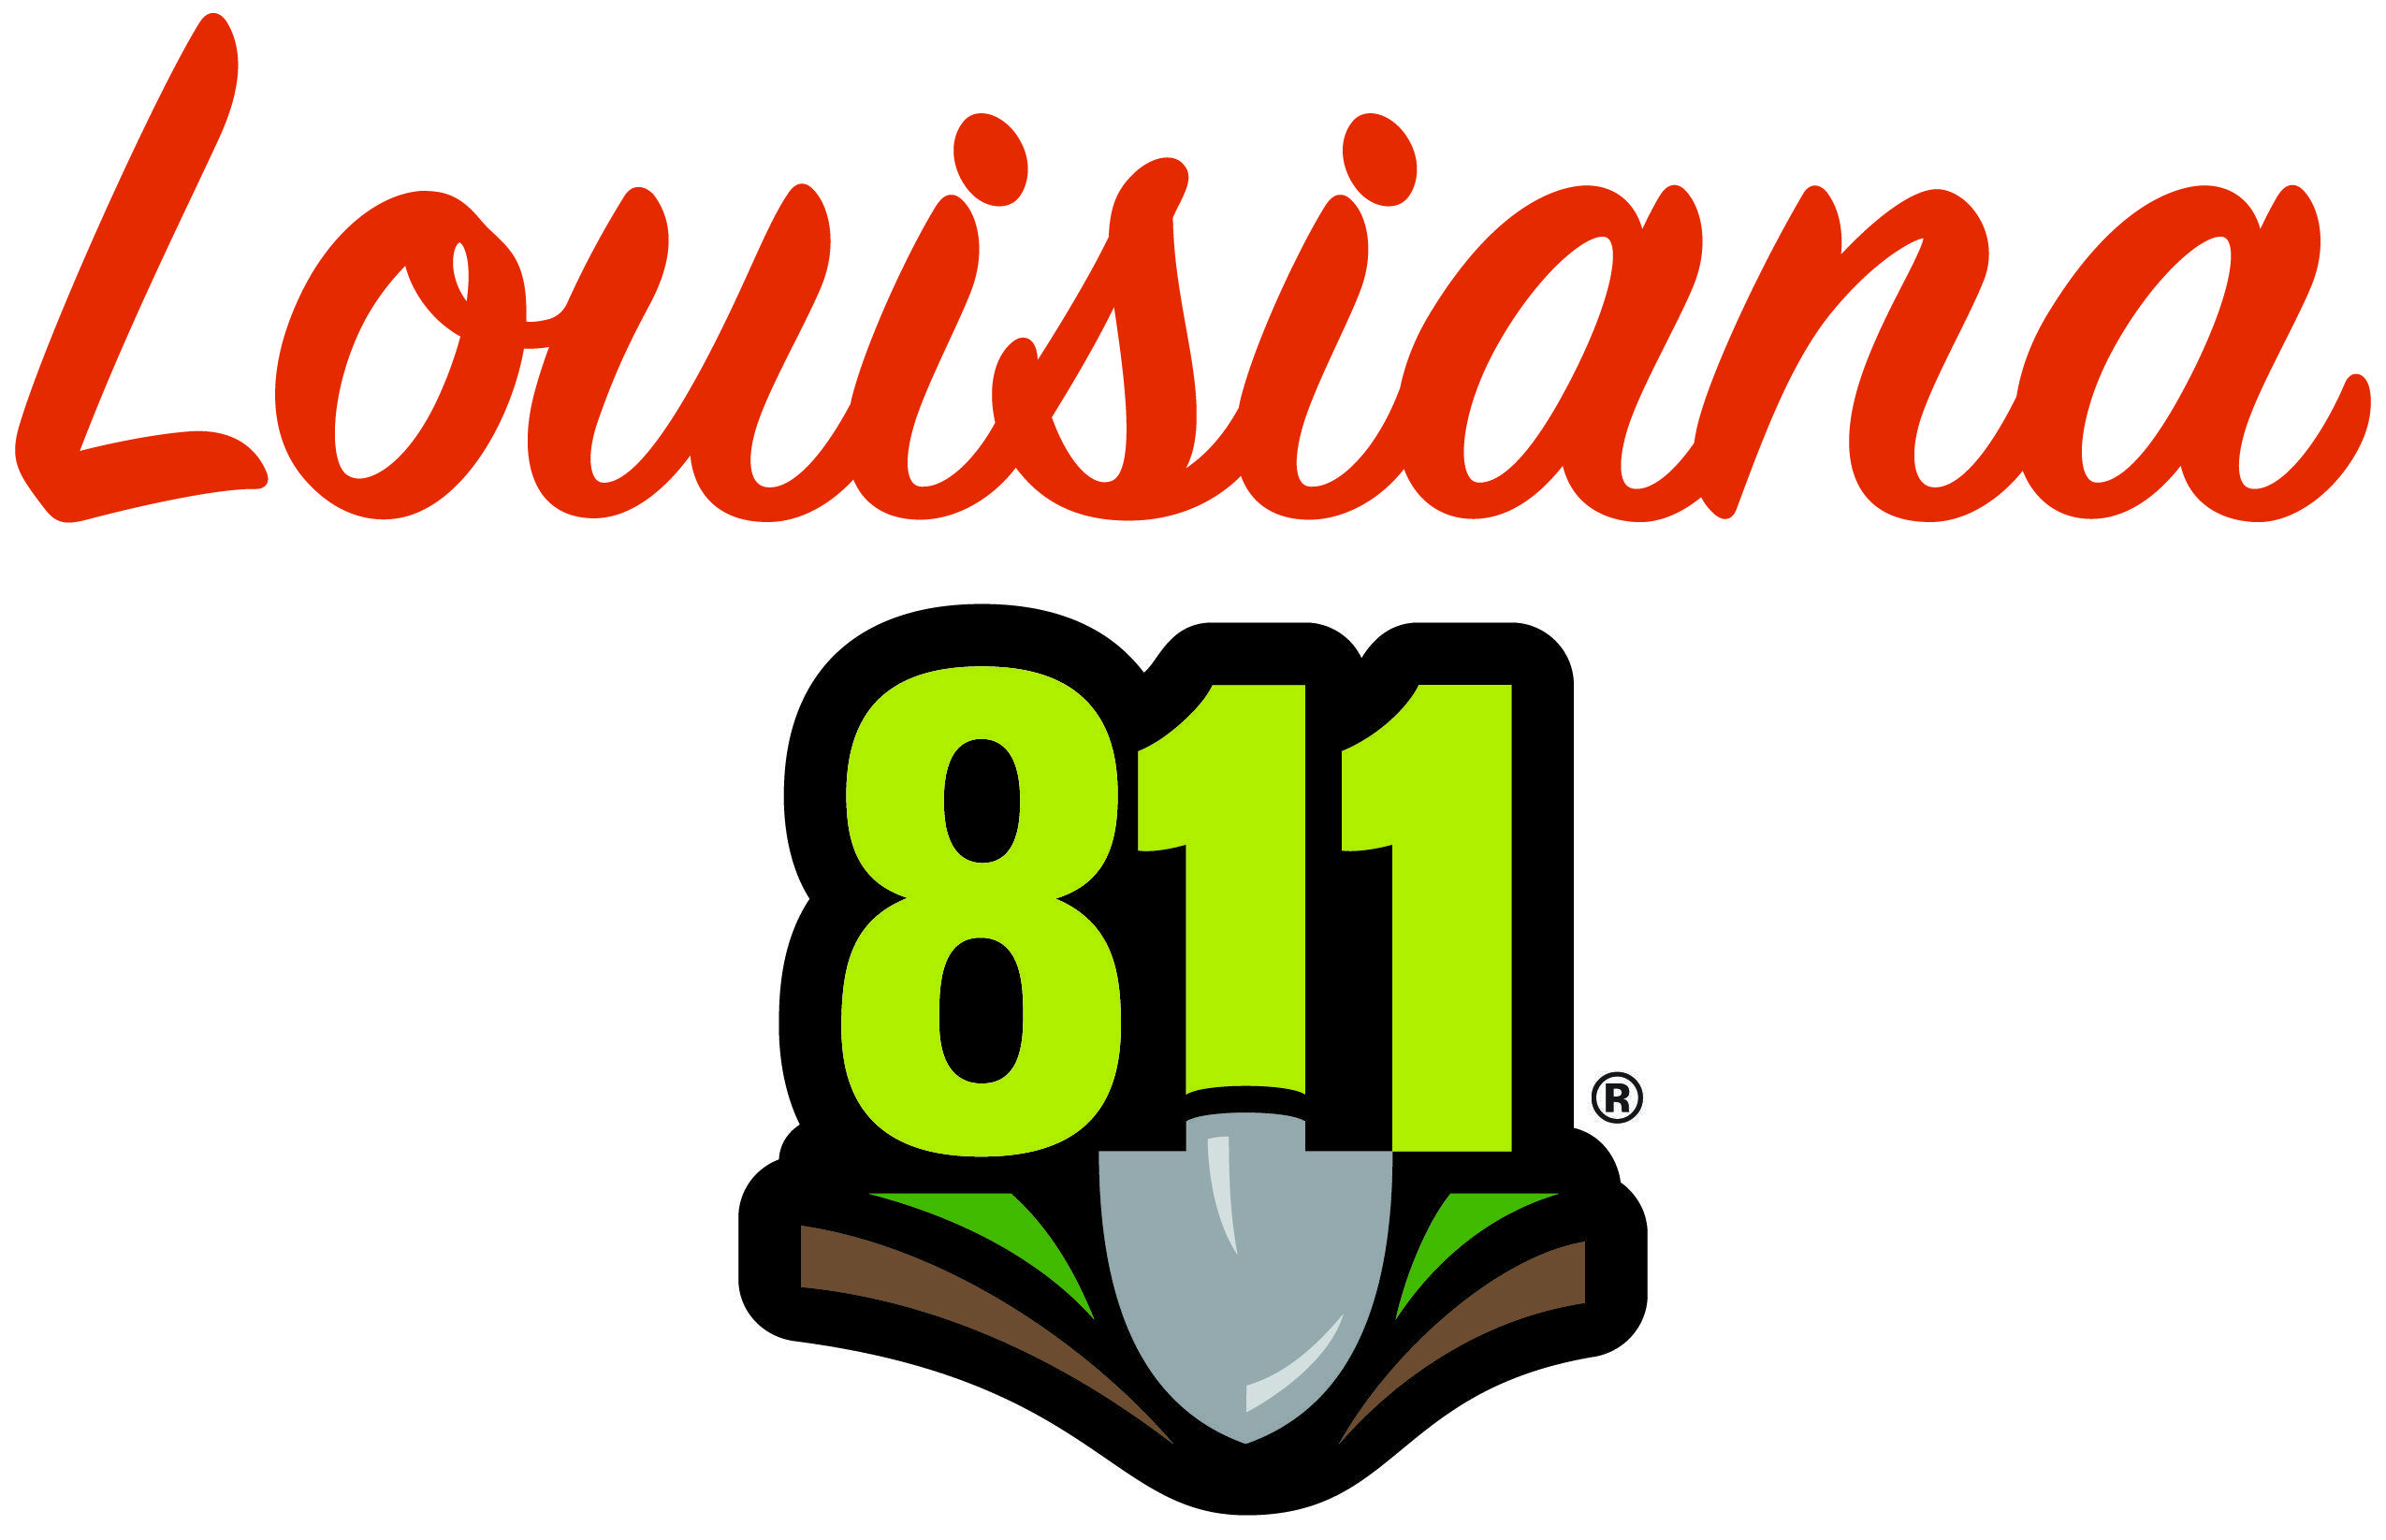 Louisiana Logo - Louisiana | Call811